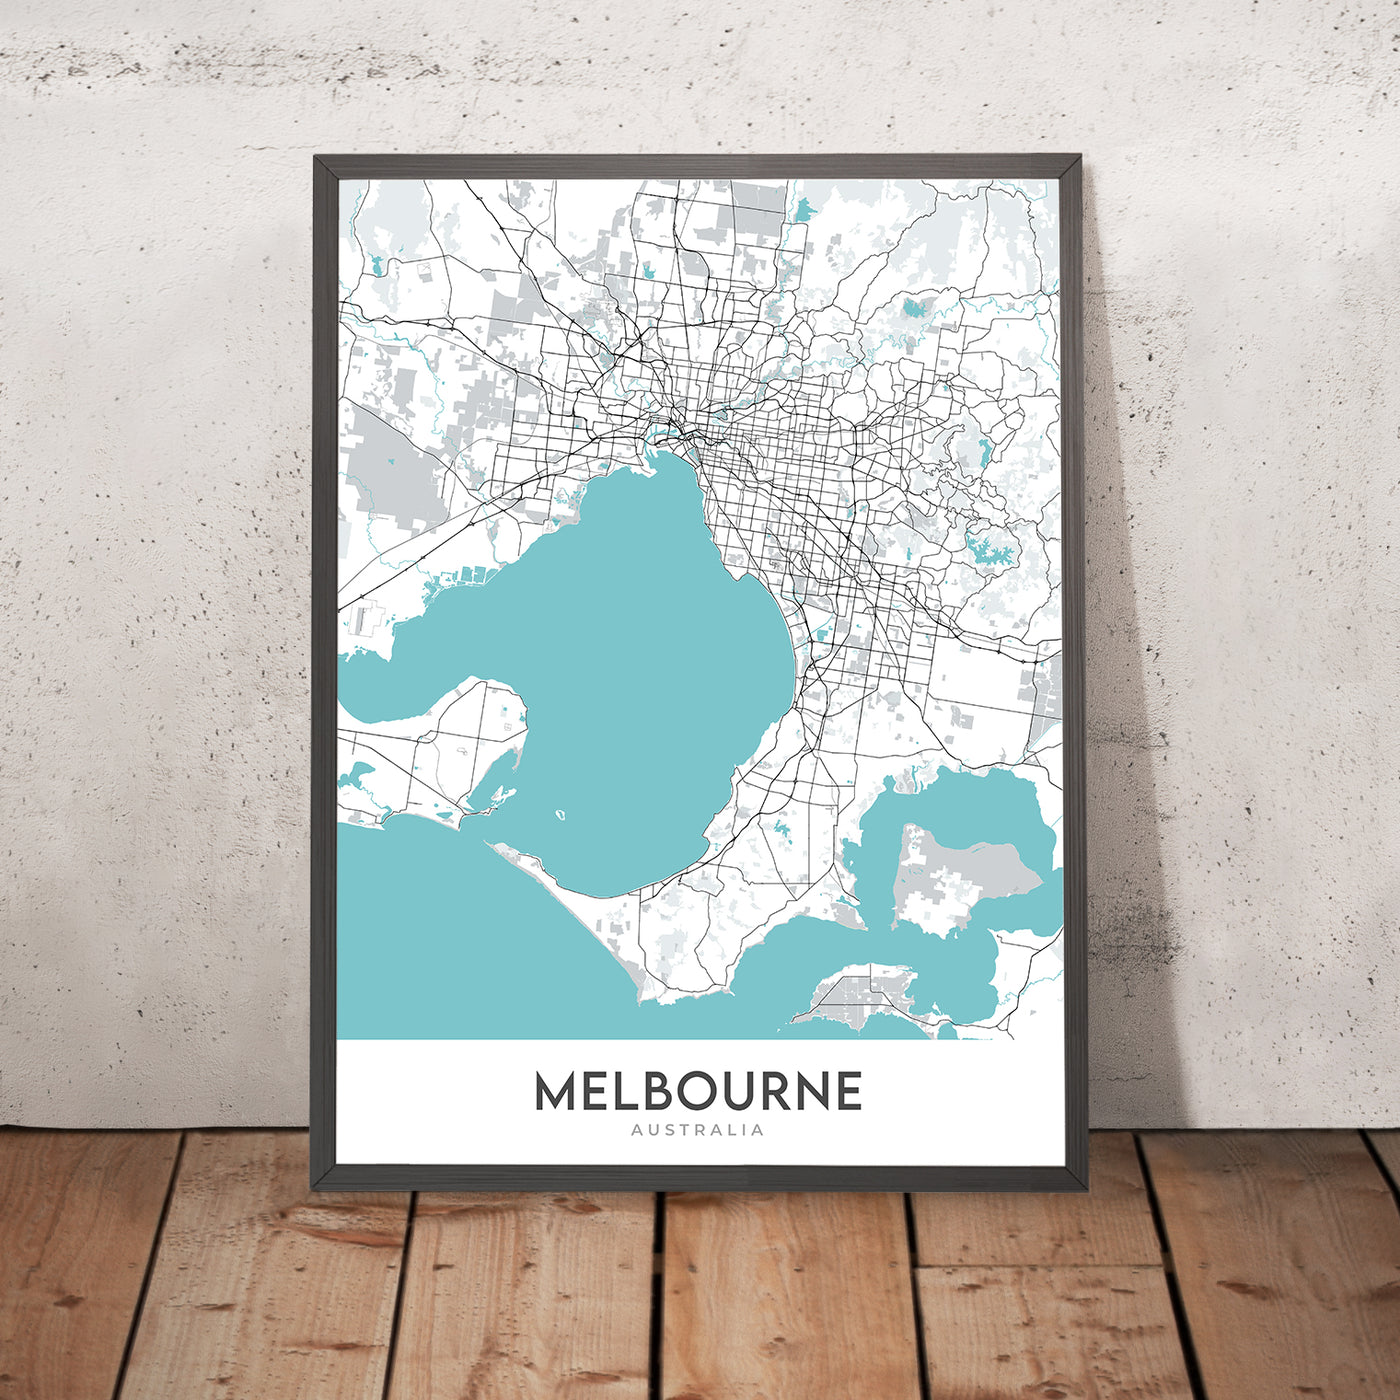 Plan de la ville moderne de Melbourne, Australie : MCG, GNV, Queen Victoria Market, South Melbourne Market, Prahran Market